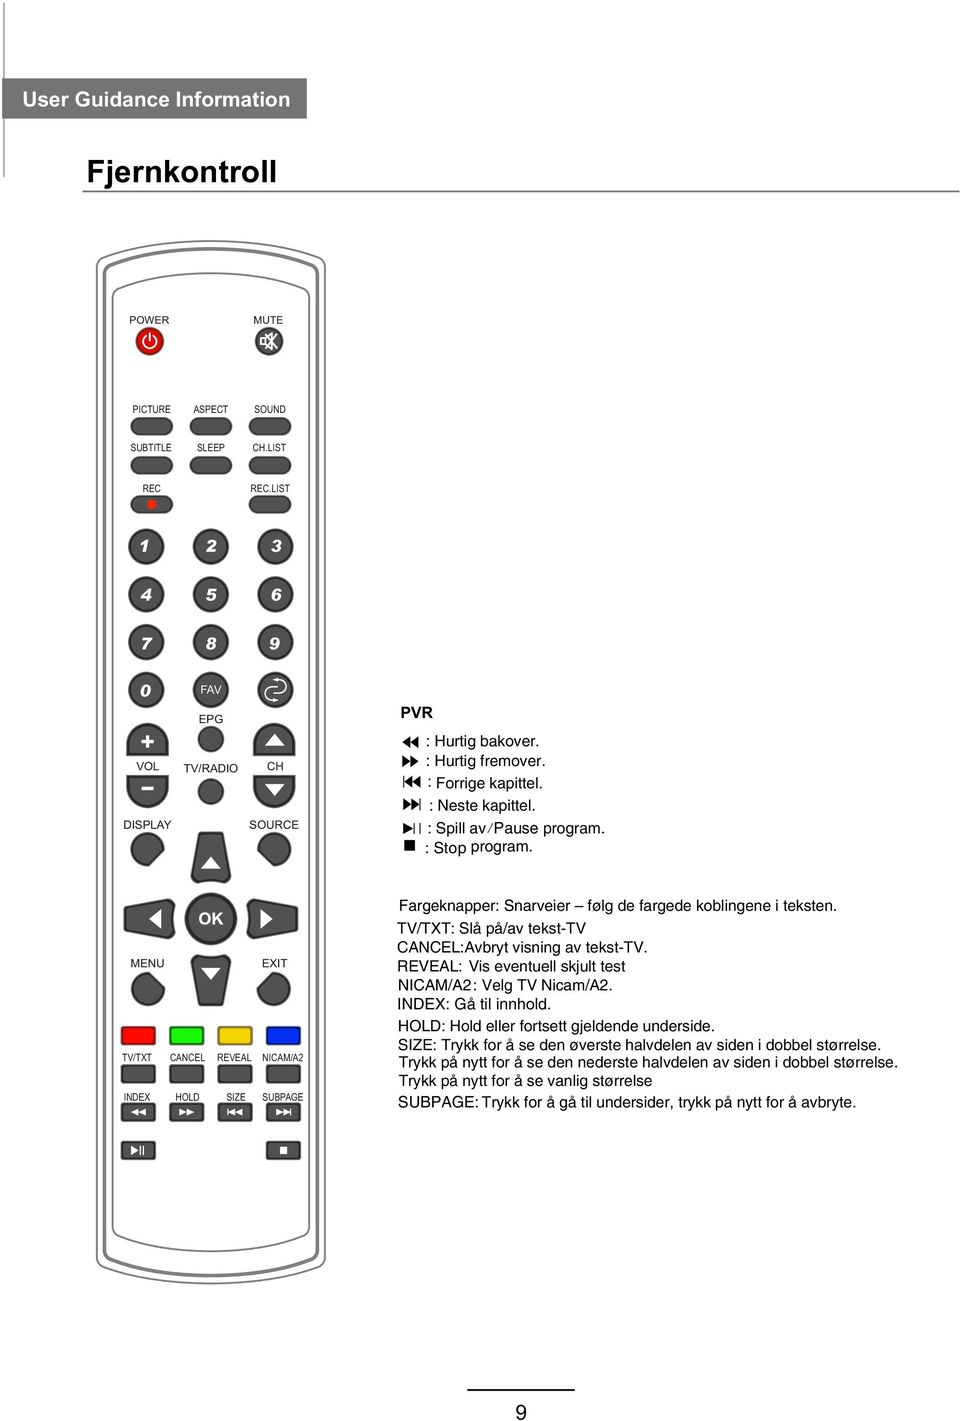 MENU EXIT TV/TXT CANCEL REVEAL NICAM/A2 INDEX HOLD SIZE SUBPAGE Fargeknapper: Snarveier følg de fargede koblingene i teksten. TV/TXT: Slå på/av tekst-tv CANCEL:Avbryt visning av tekst-tv.